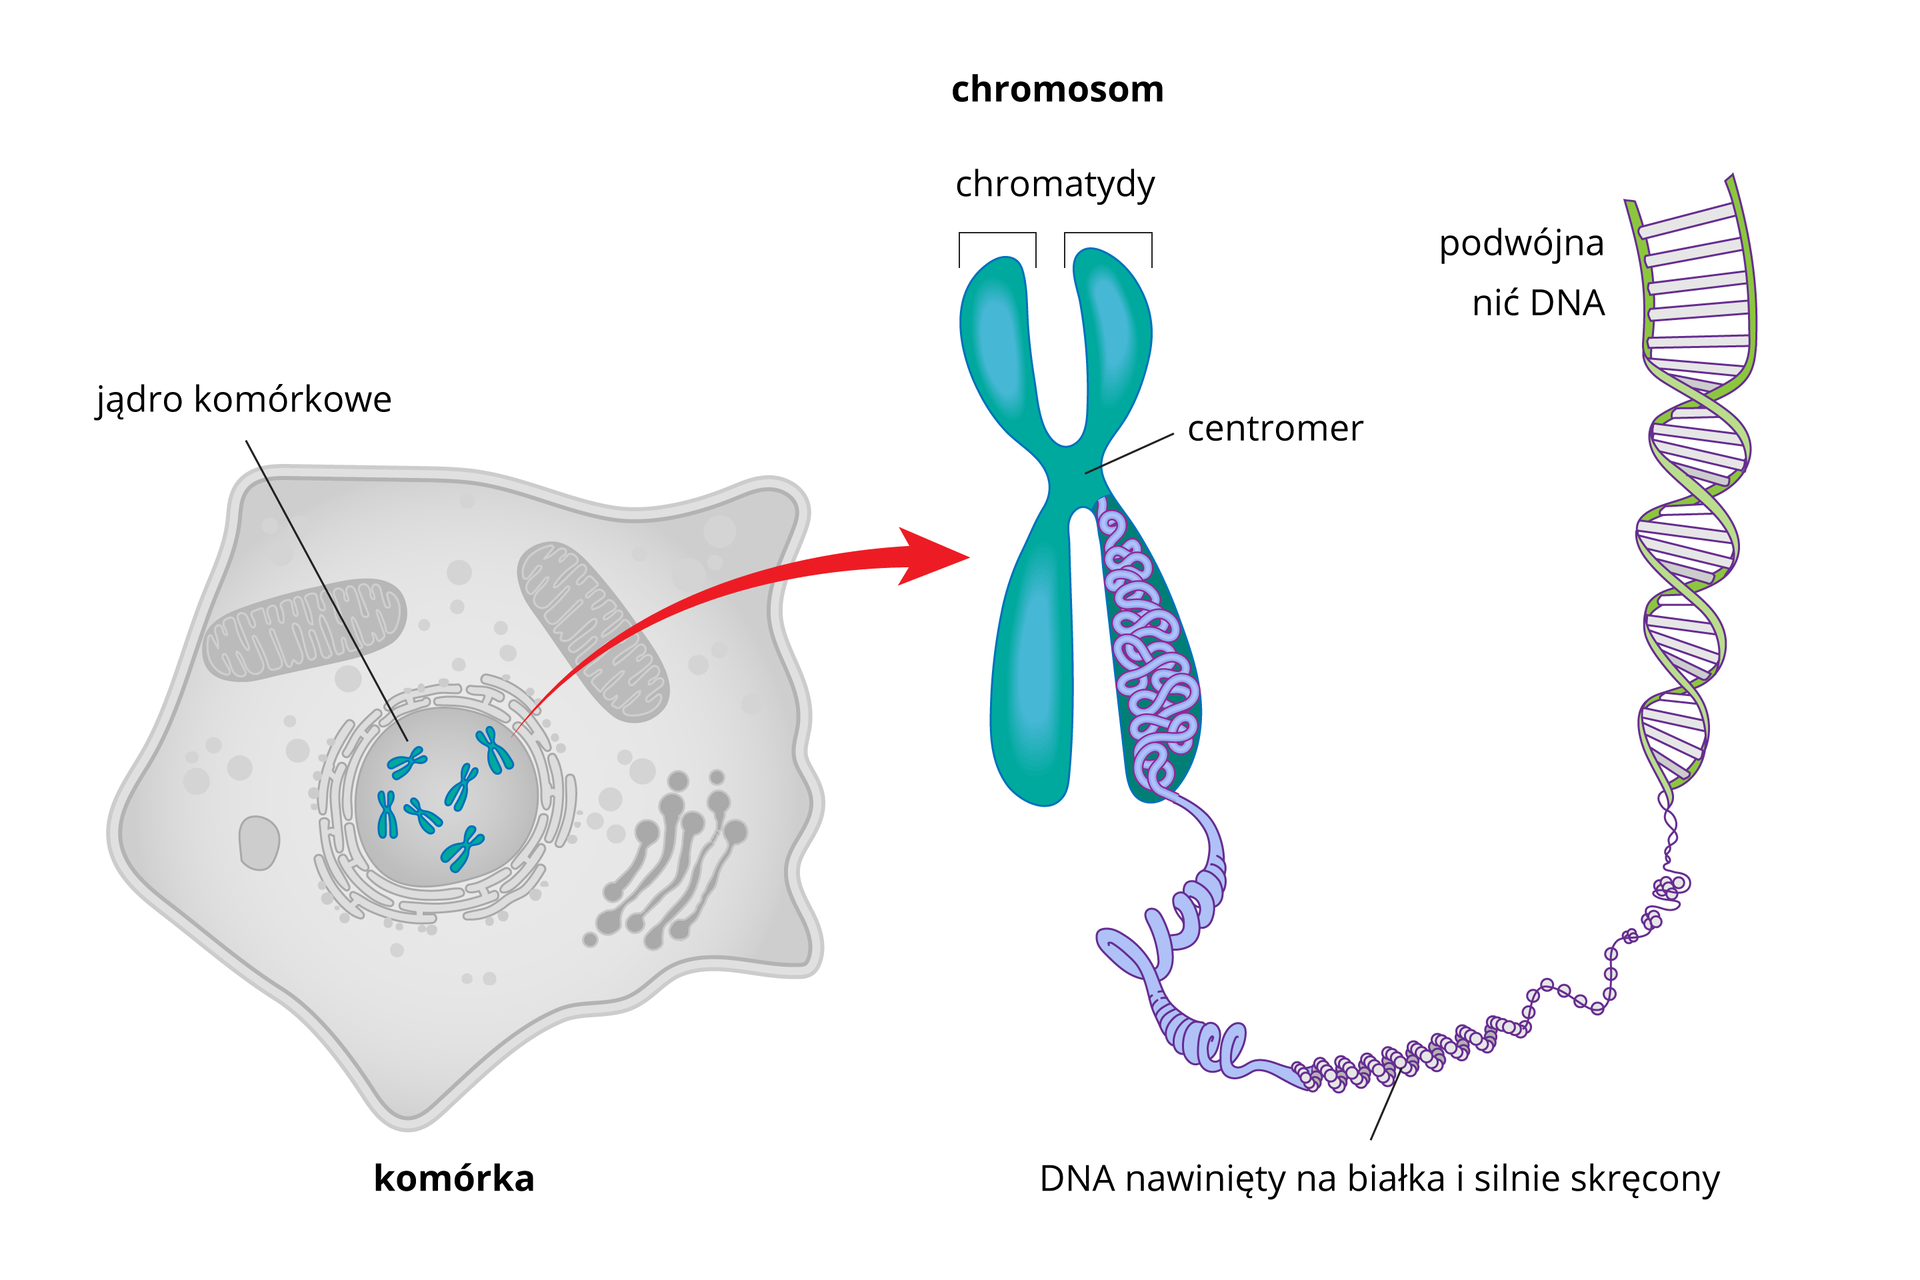 Ilustracja przestawia kolejne powiększenia chromosomu. Od lewej wielokątna szara komórka z zaznaczonymi organellami. W środku jądro komórkowe z błękitnymi chromosomami. Od nich strzałka w prawo do jednego iksowatego chromosomu. Ramiona podpisane chromatydy, w środku połączenie nazwane centromer. Z chromatydy u dołu wysuwa się splątana, gruba lina. To DNA, nawinięty na białka i silnie skręcony. Dalej w prawo lina rozwija się i uwidacznia skręconą drabinkę z liliowymi szczeblami między zielonymi bokami. Podpis podwójna nić DNA.